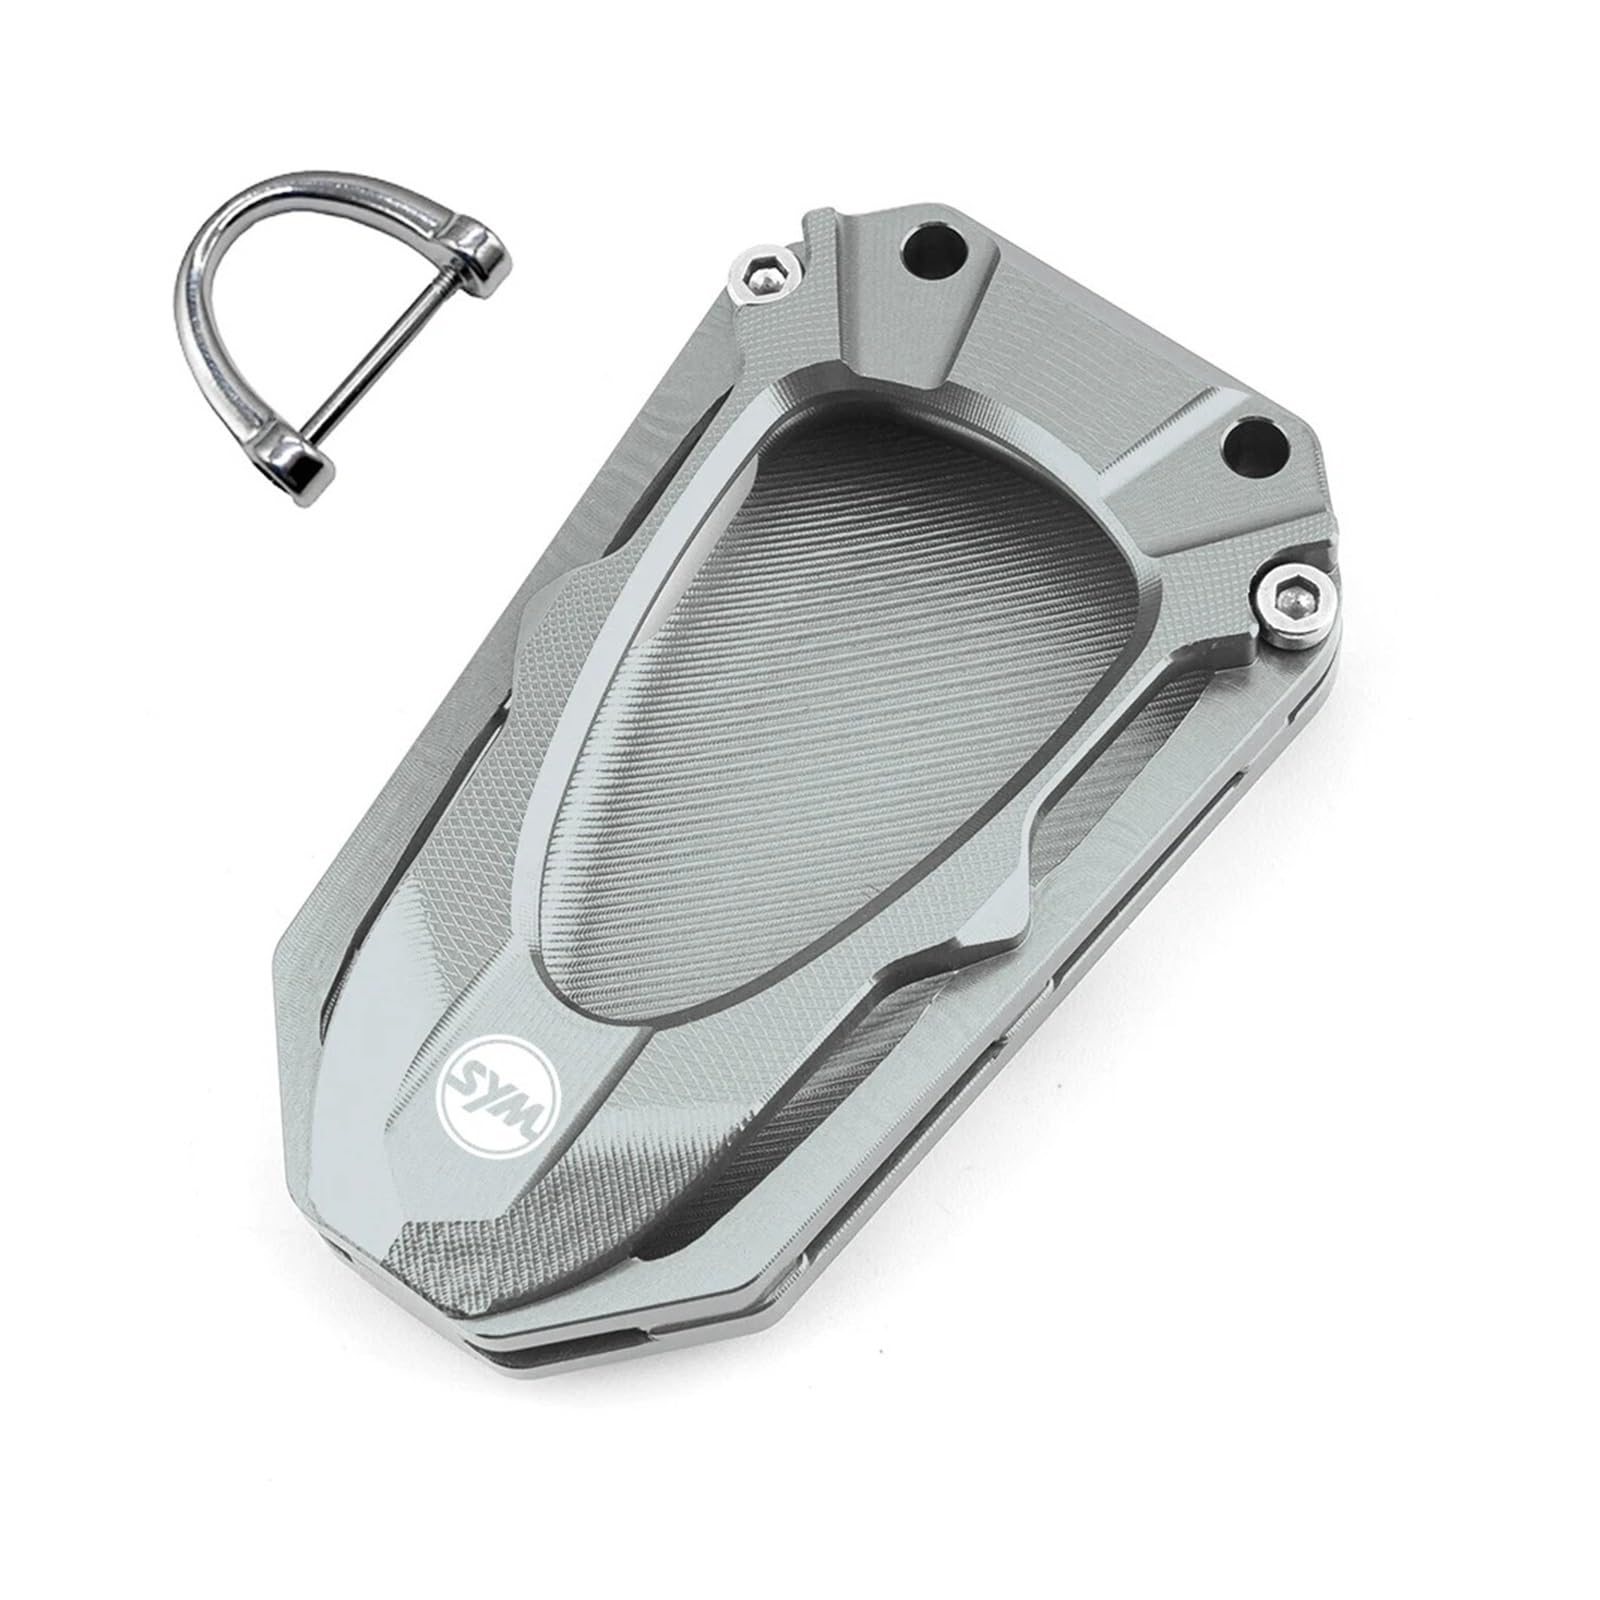 Schlüsselgehäuse aus Aluminiumlegierung Für SYM Jetx Jet X 125 150 X125 X150 CNC Moto Schlüsselhülle Hülle Shell Cap & Schlüsselanhänger Schlüsselanhänger Schlüsselanhänger Motorradzubehör(Key cover T von SiMuRYP